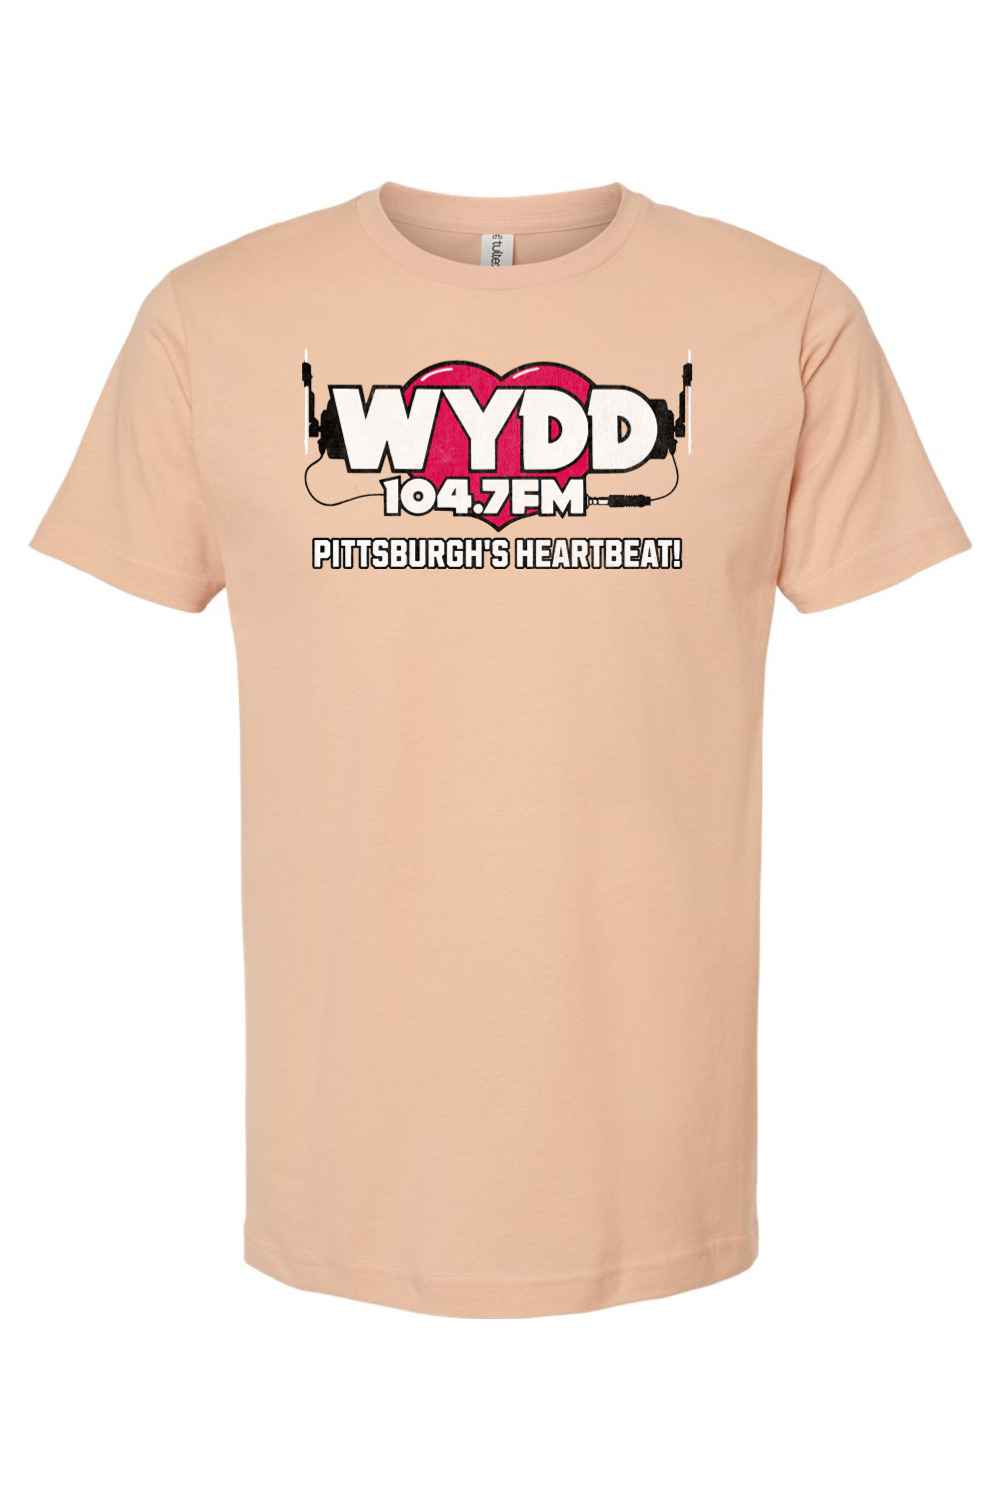 WYDD - 104.7 FM - Pittsburgh's Heartbeat - Yinzylvania